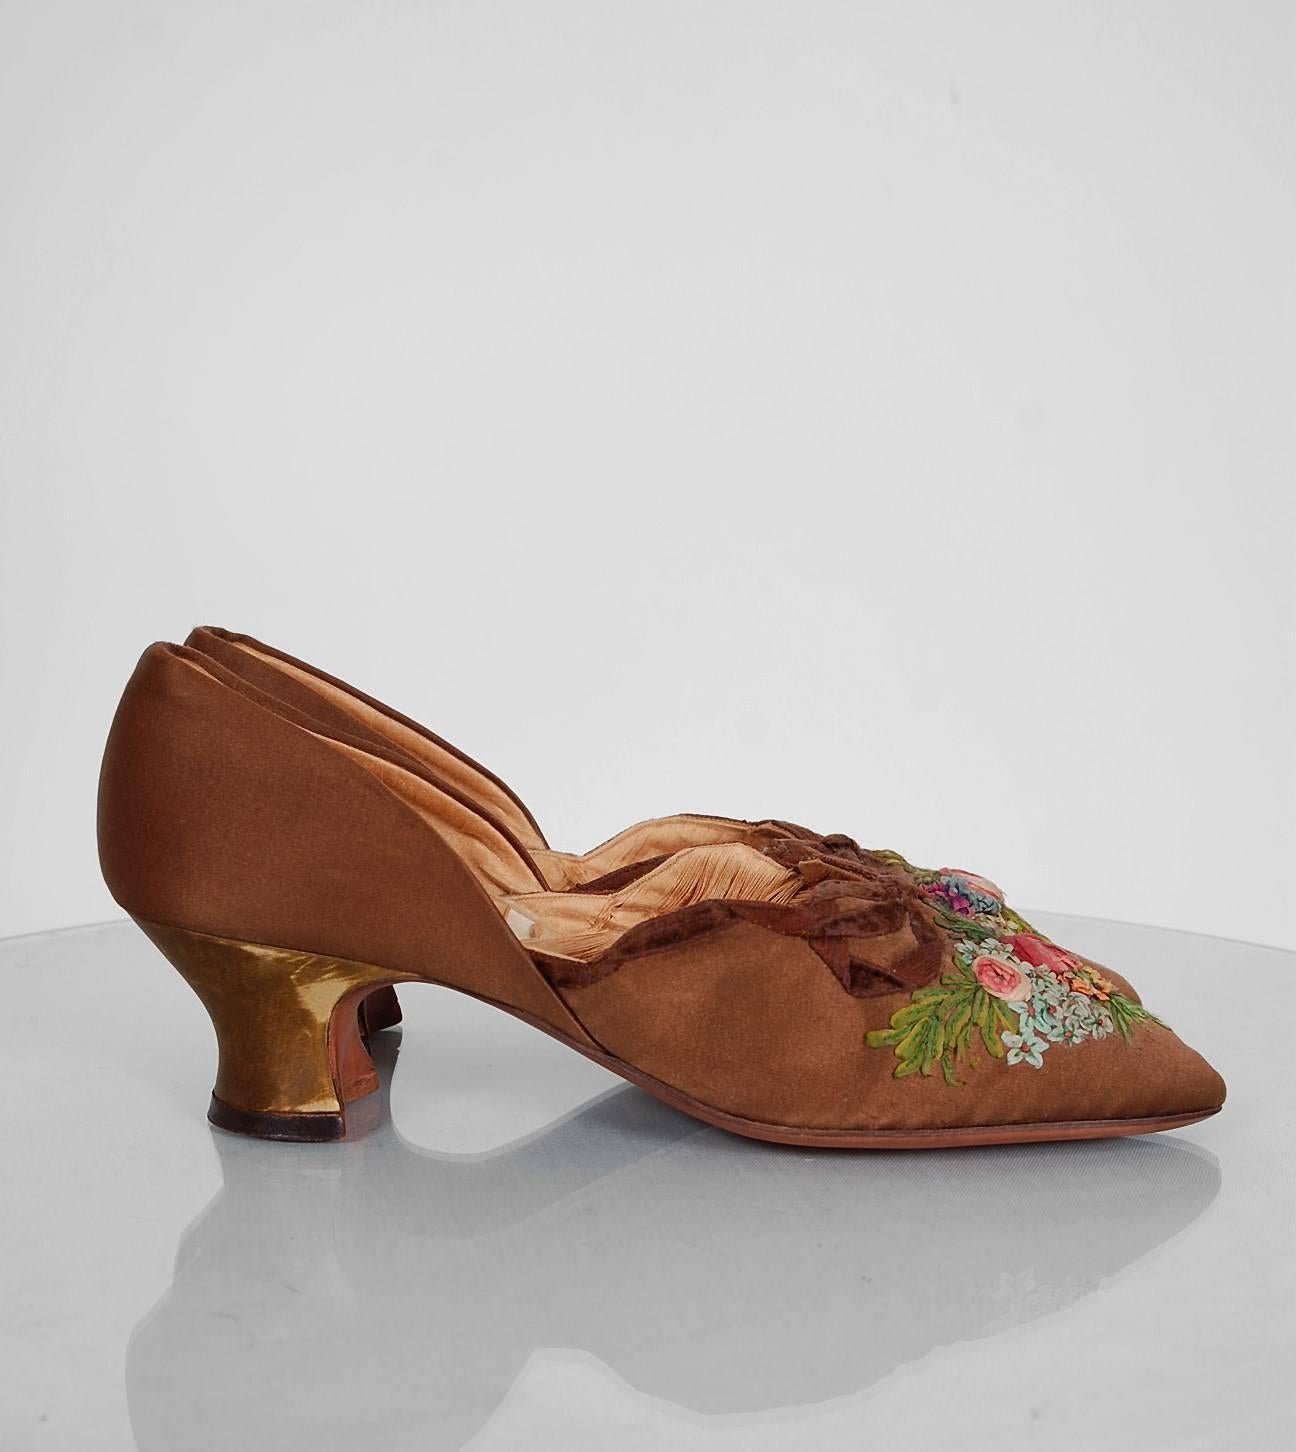 1910s shoes